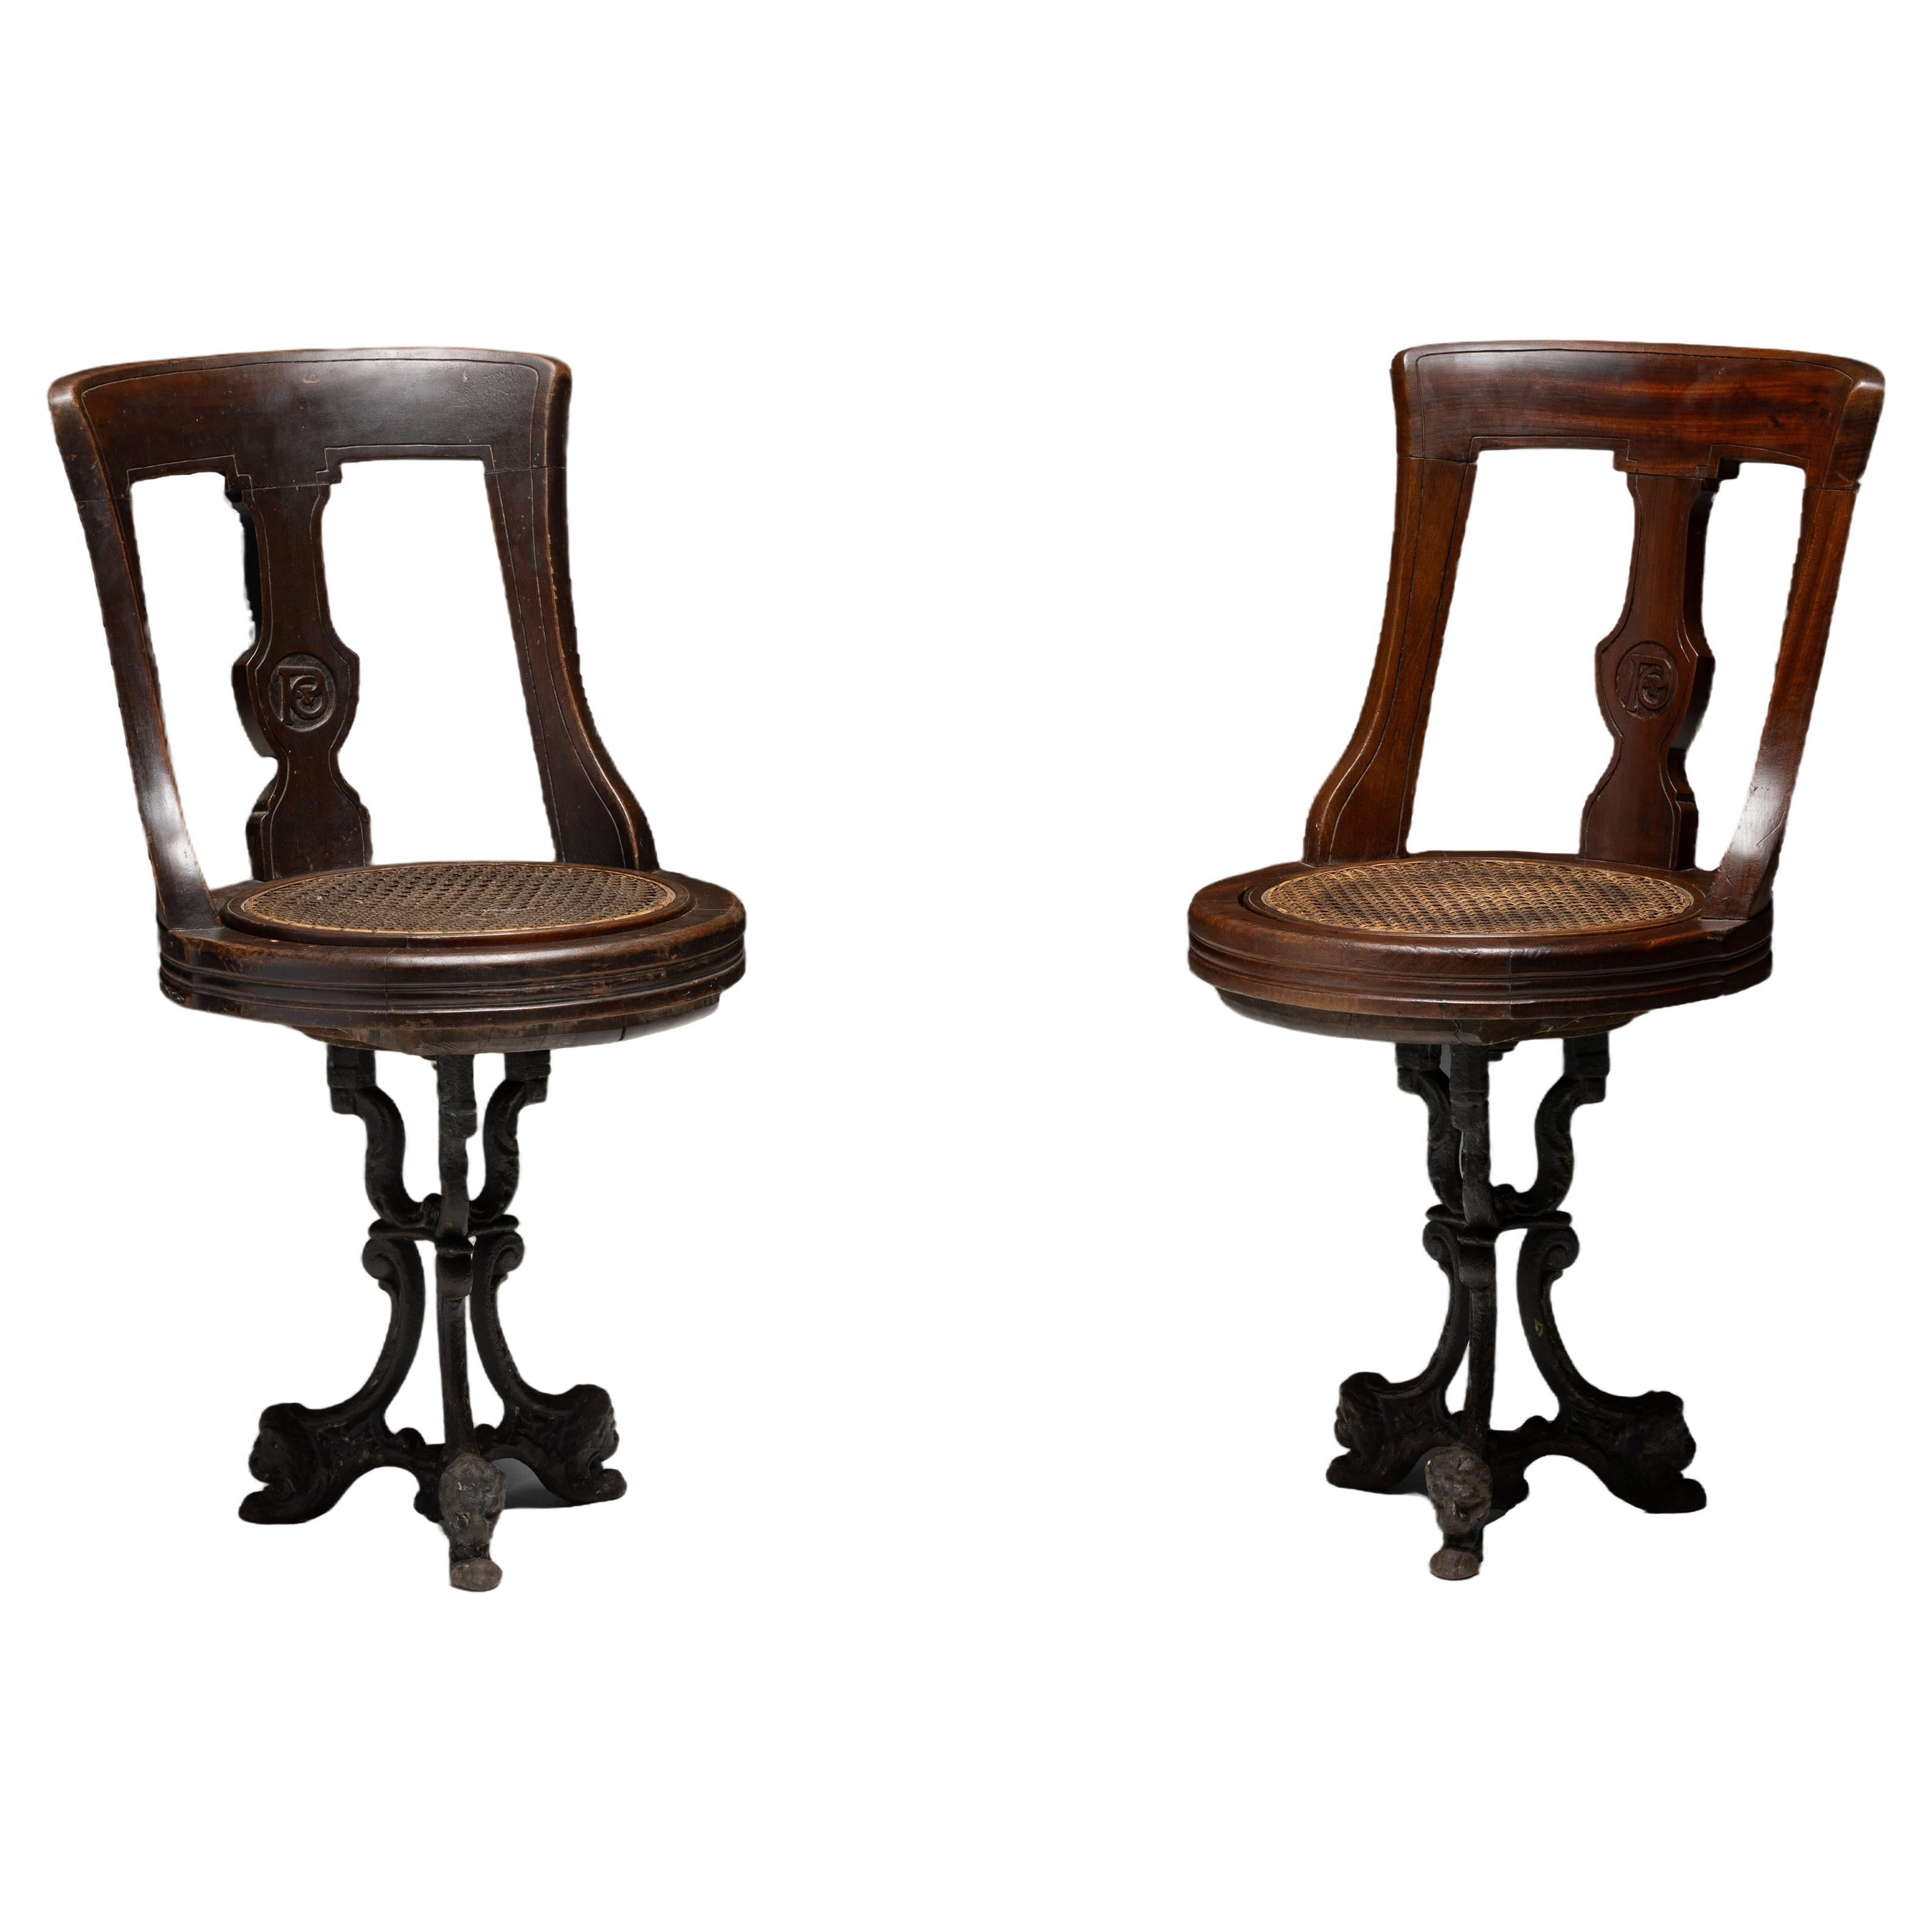 Revolving Ship Chair(s), England circa 1870 For Sale